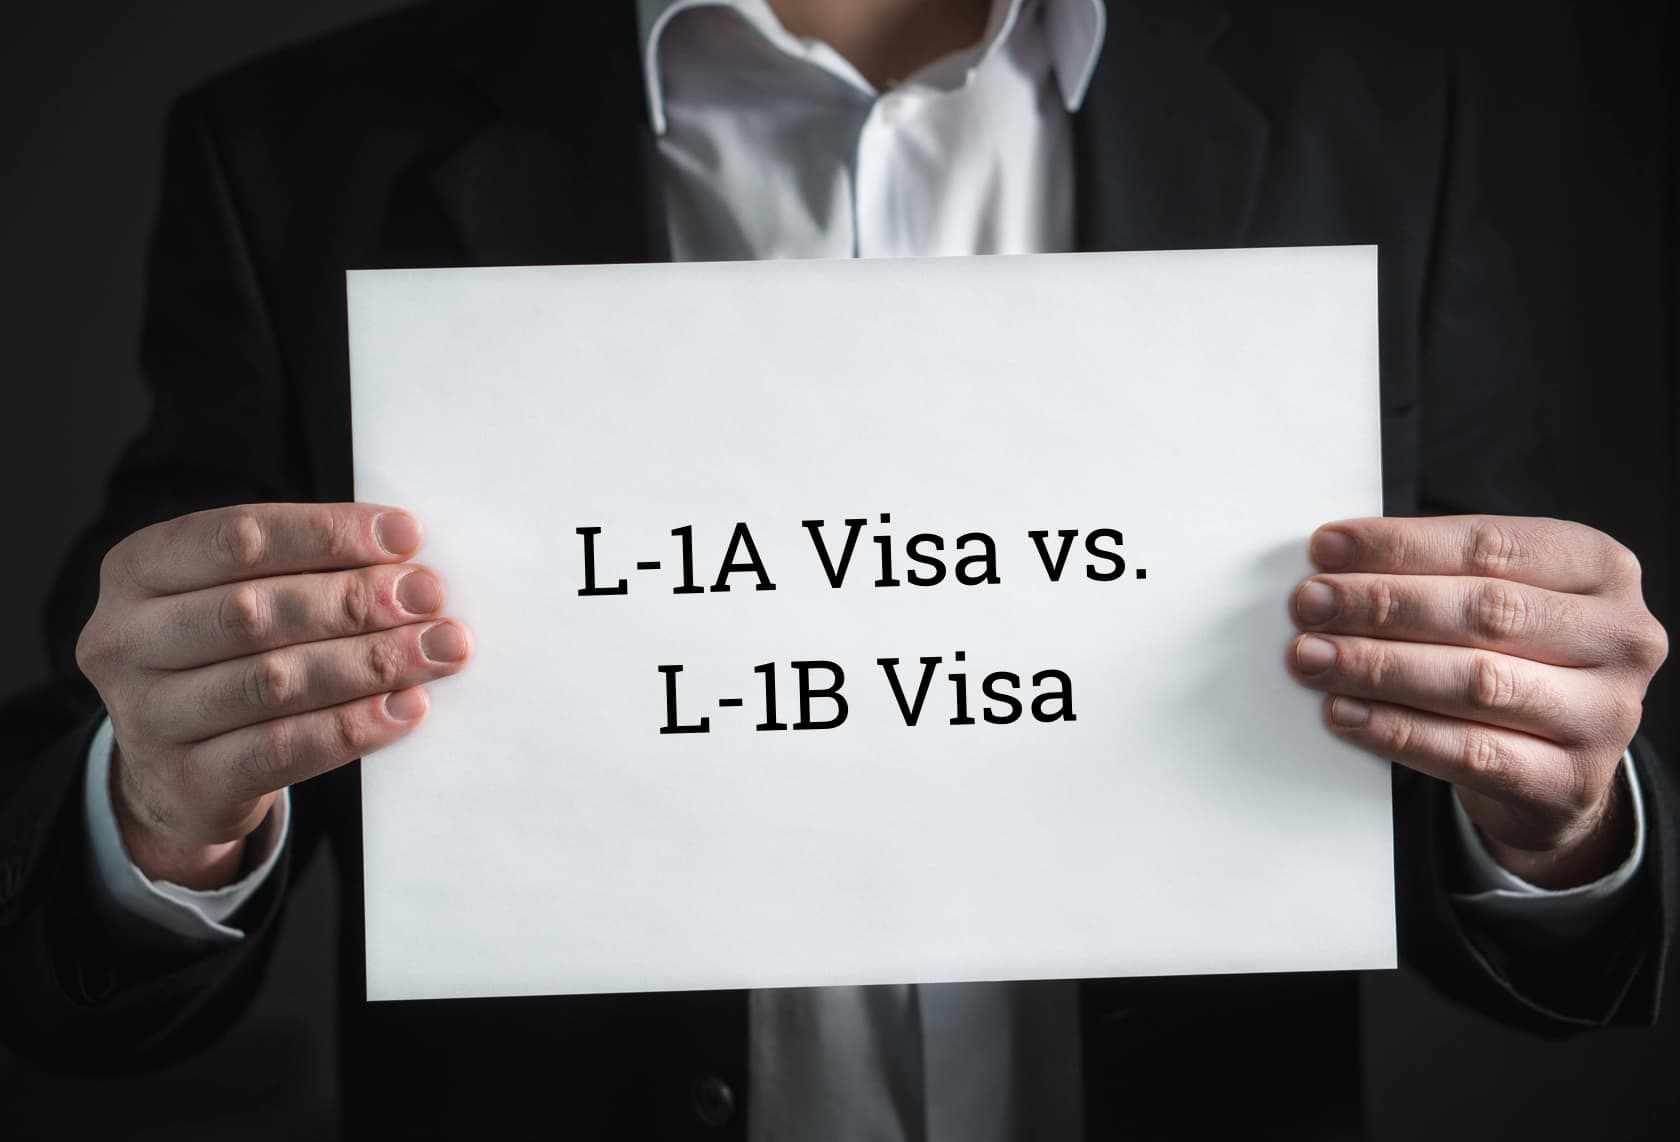 L-1A visa vs L-1B visa